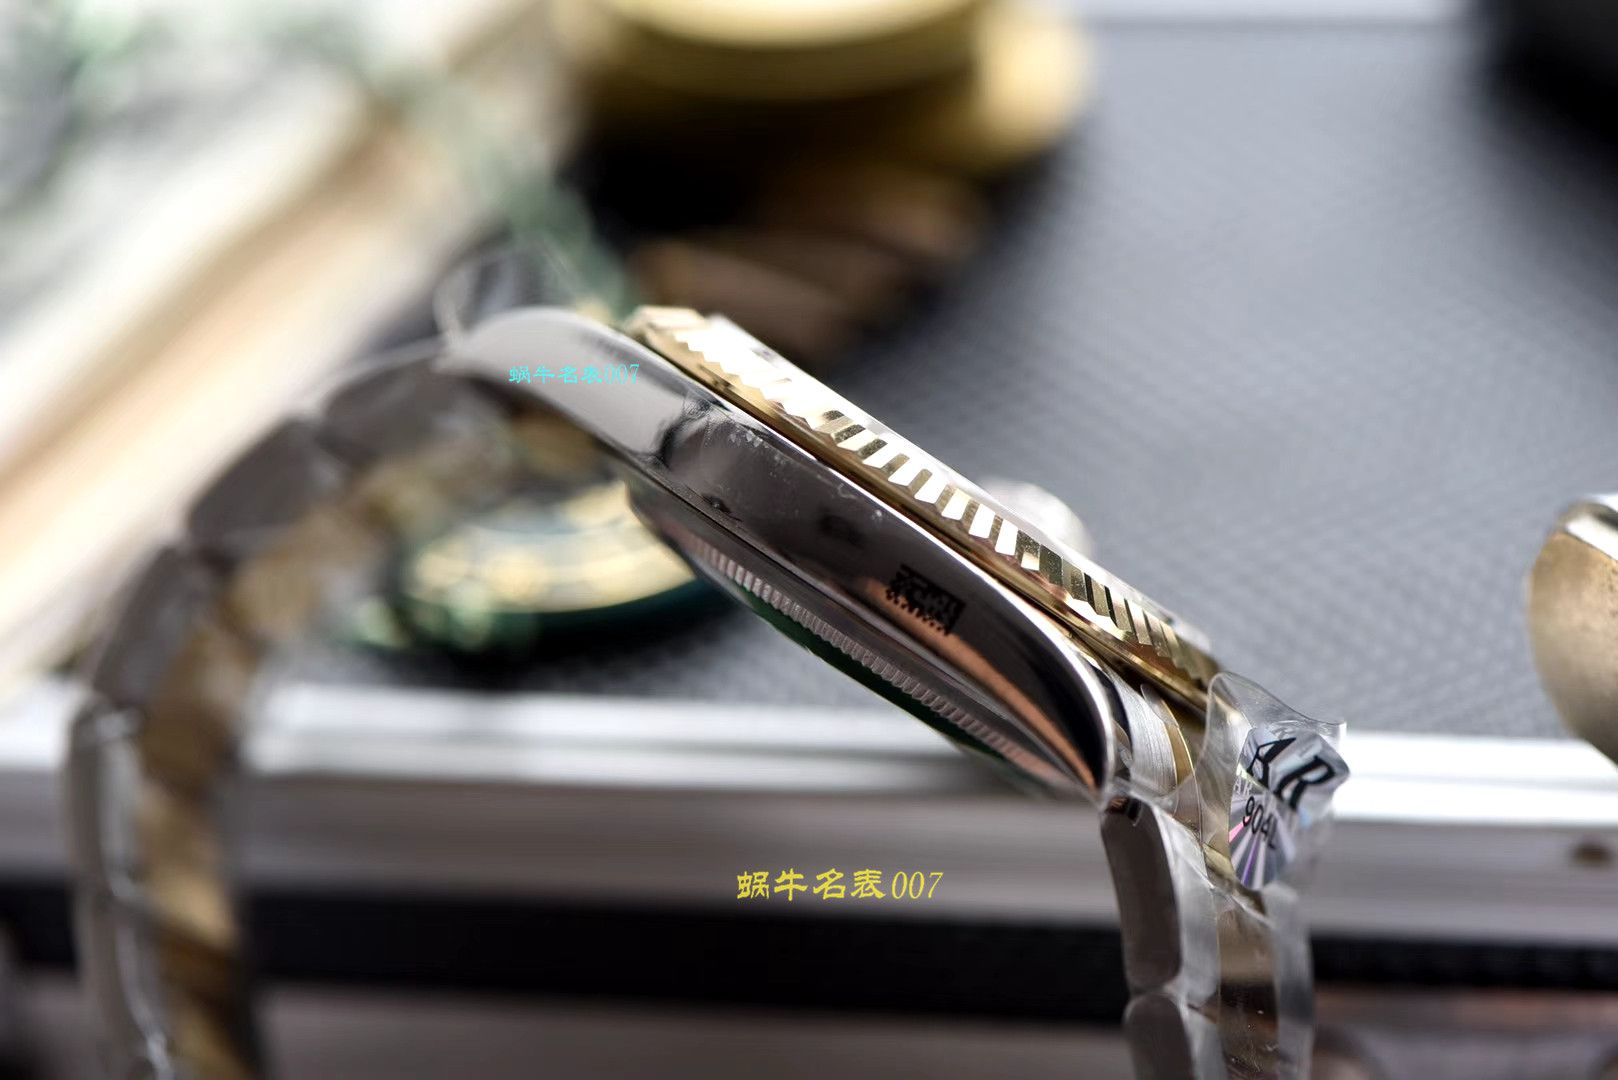 【视频评测AR厂一比一复刻劳力士日志手表】复刻的手表劳力士日志型系列116333-72213香槟盘腕表 / R320